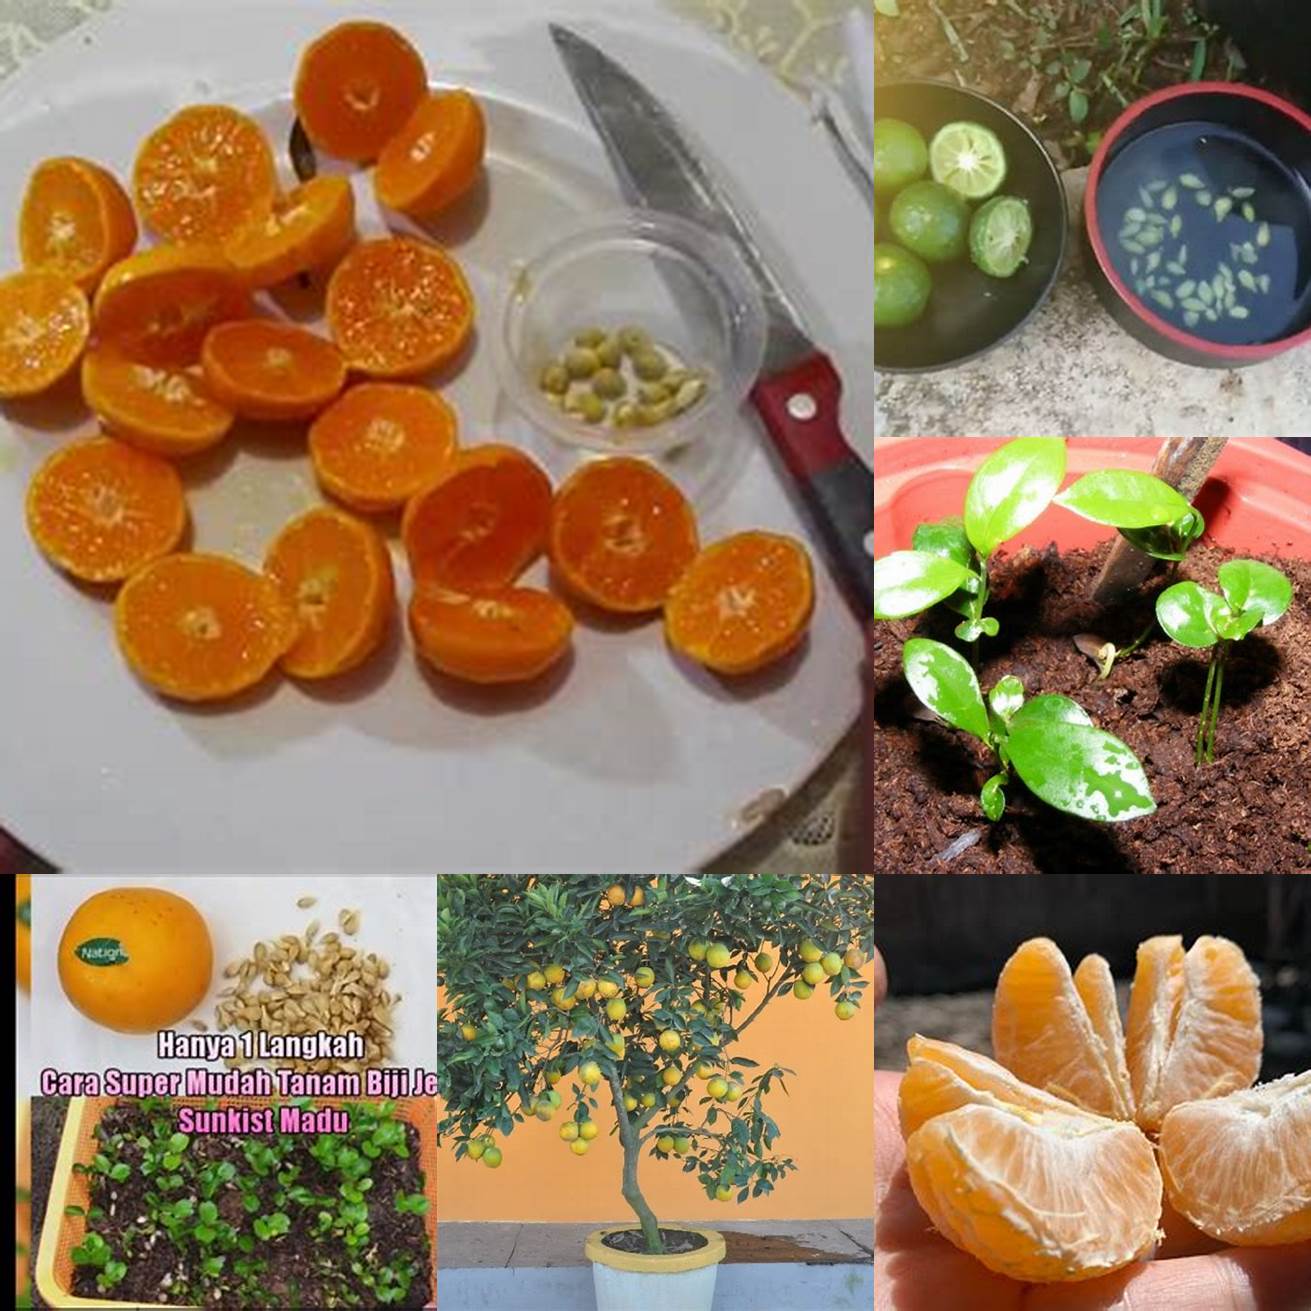 Persiapkan biji jeruk yang akan ditanam